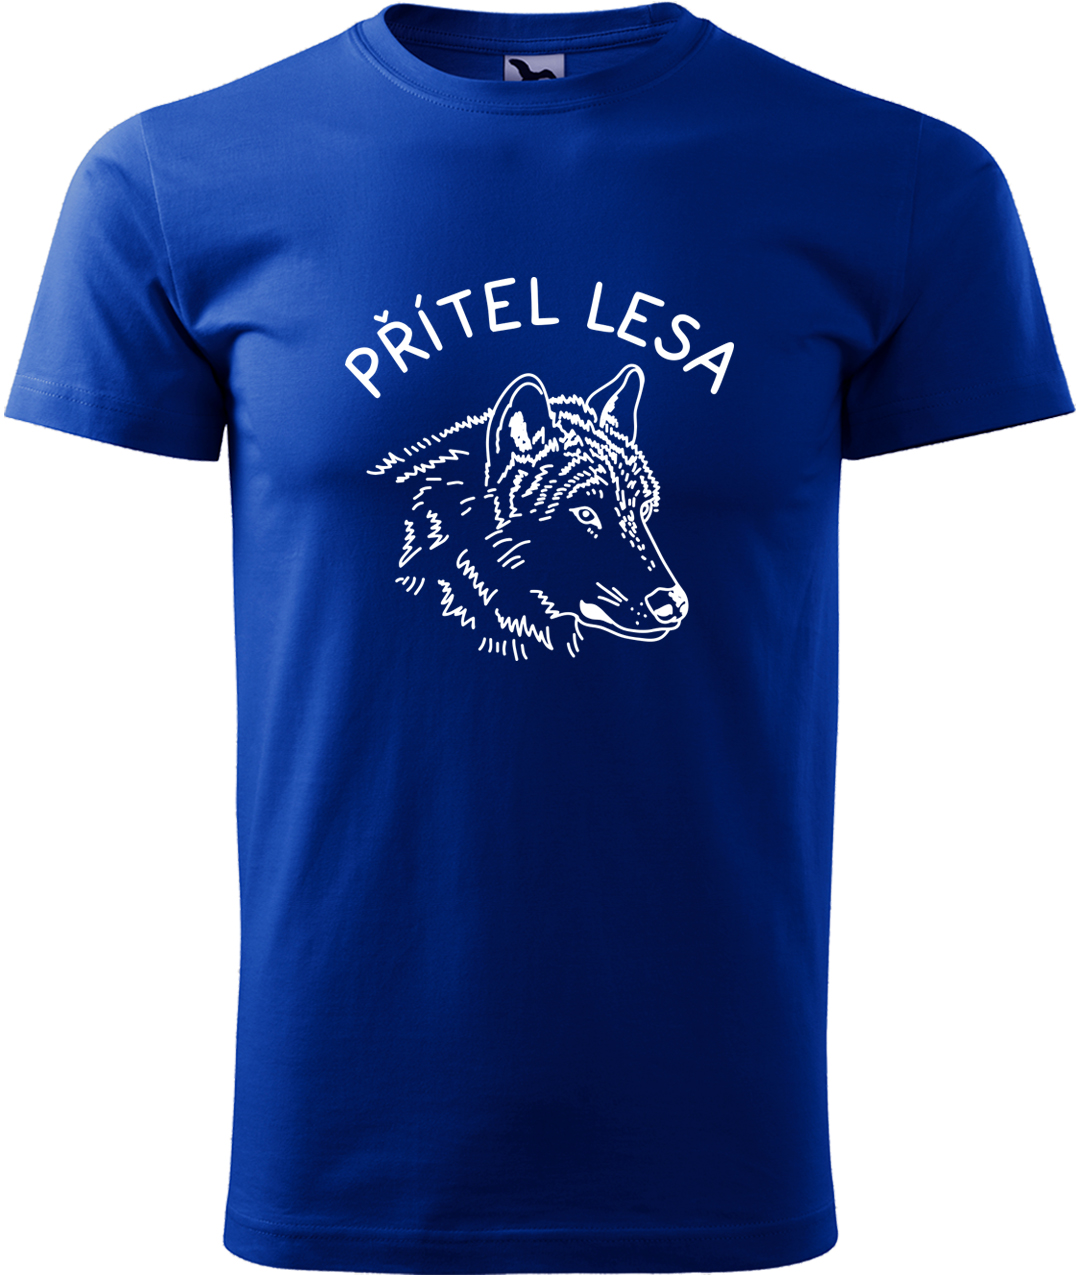 Pánské tričko s vlkem - Přítel lesa Velikost: M, Barva: Královská modrá (05), Střih: pánský